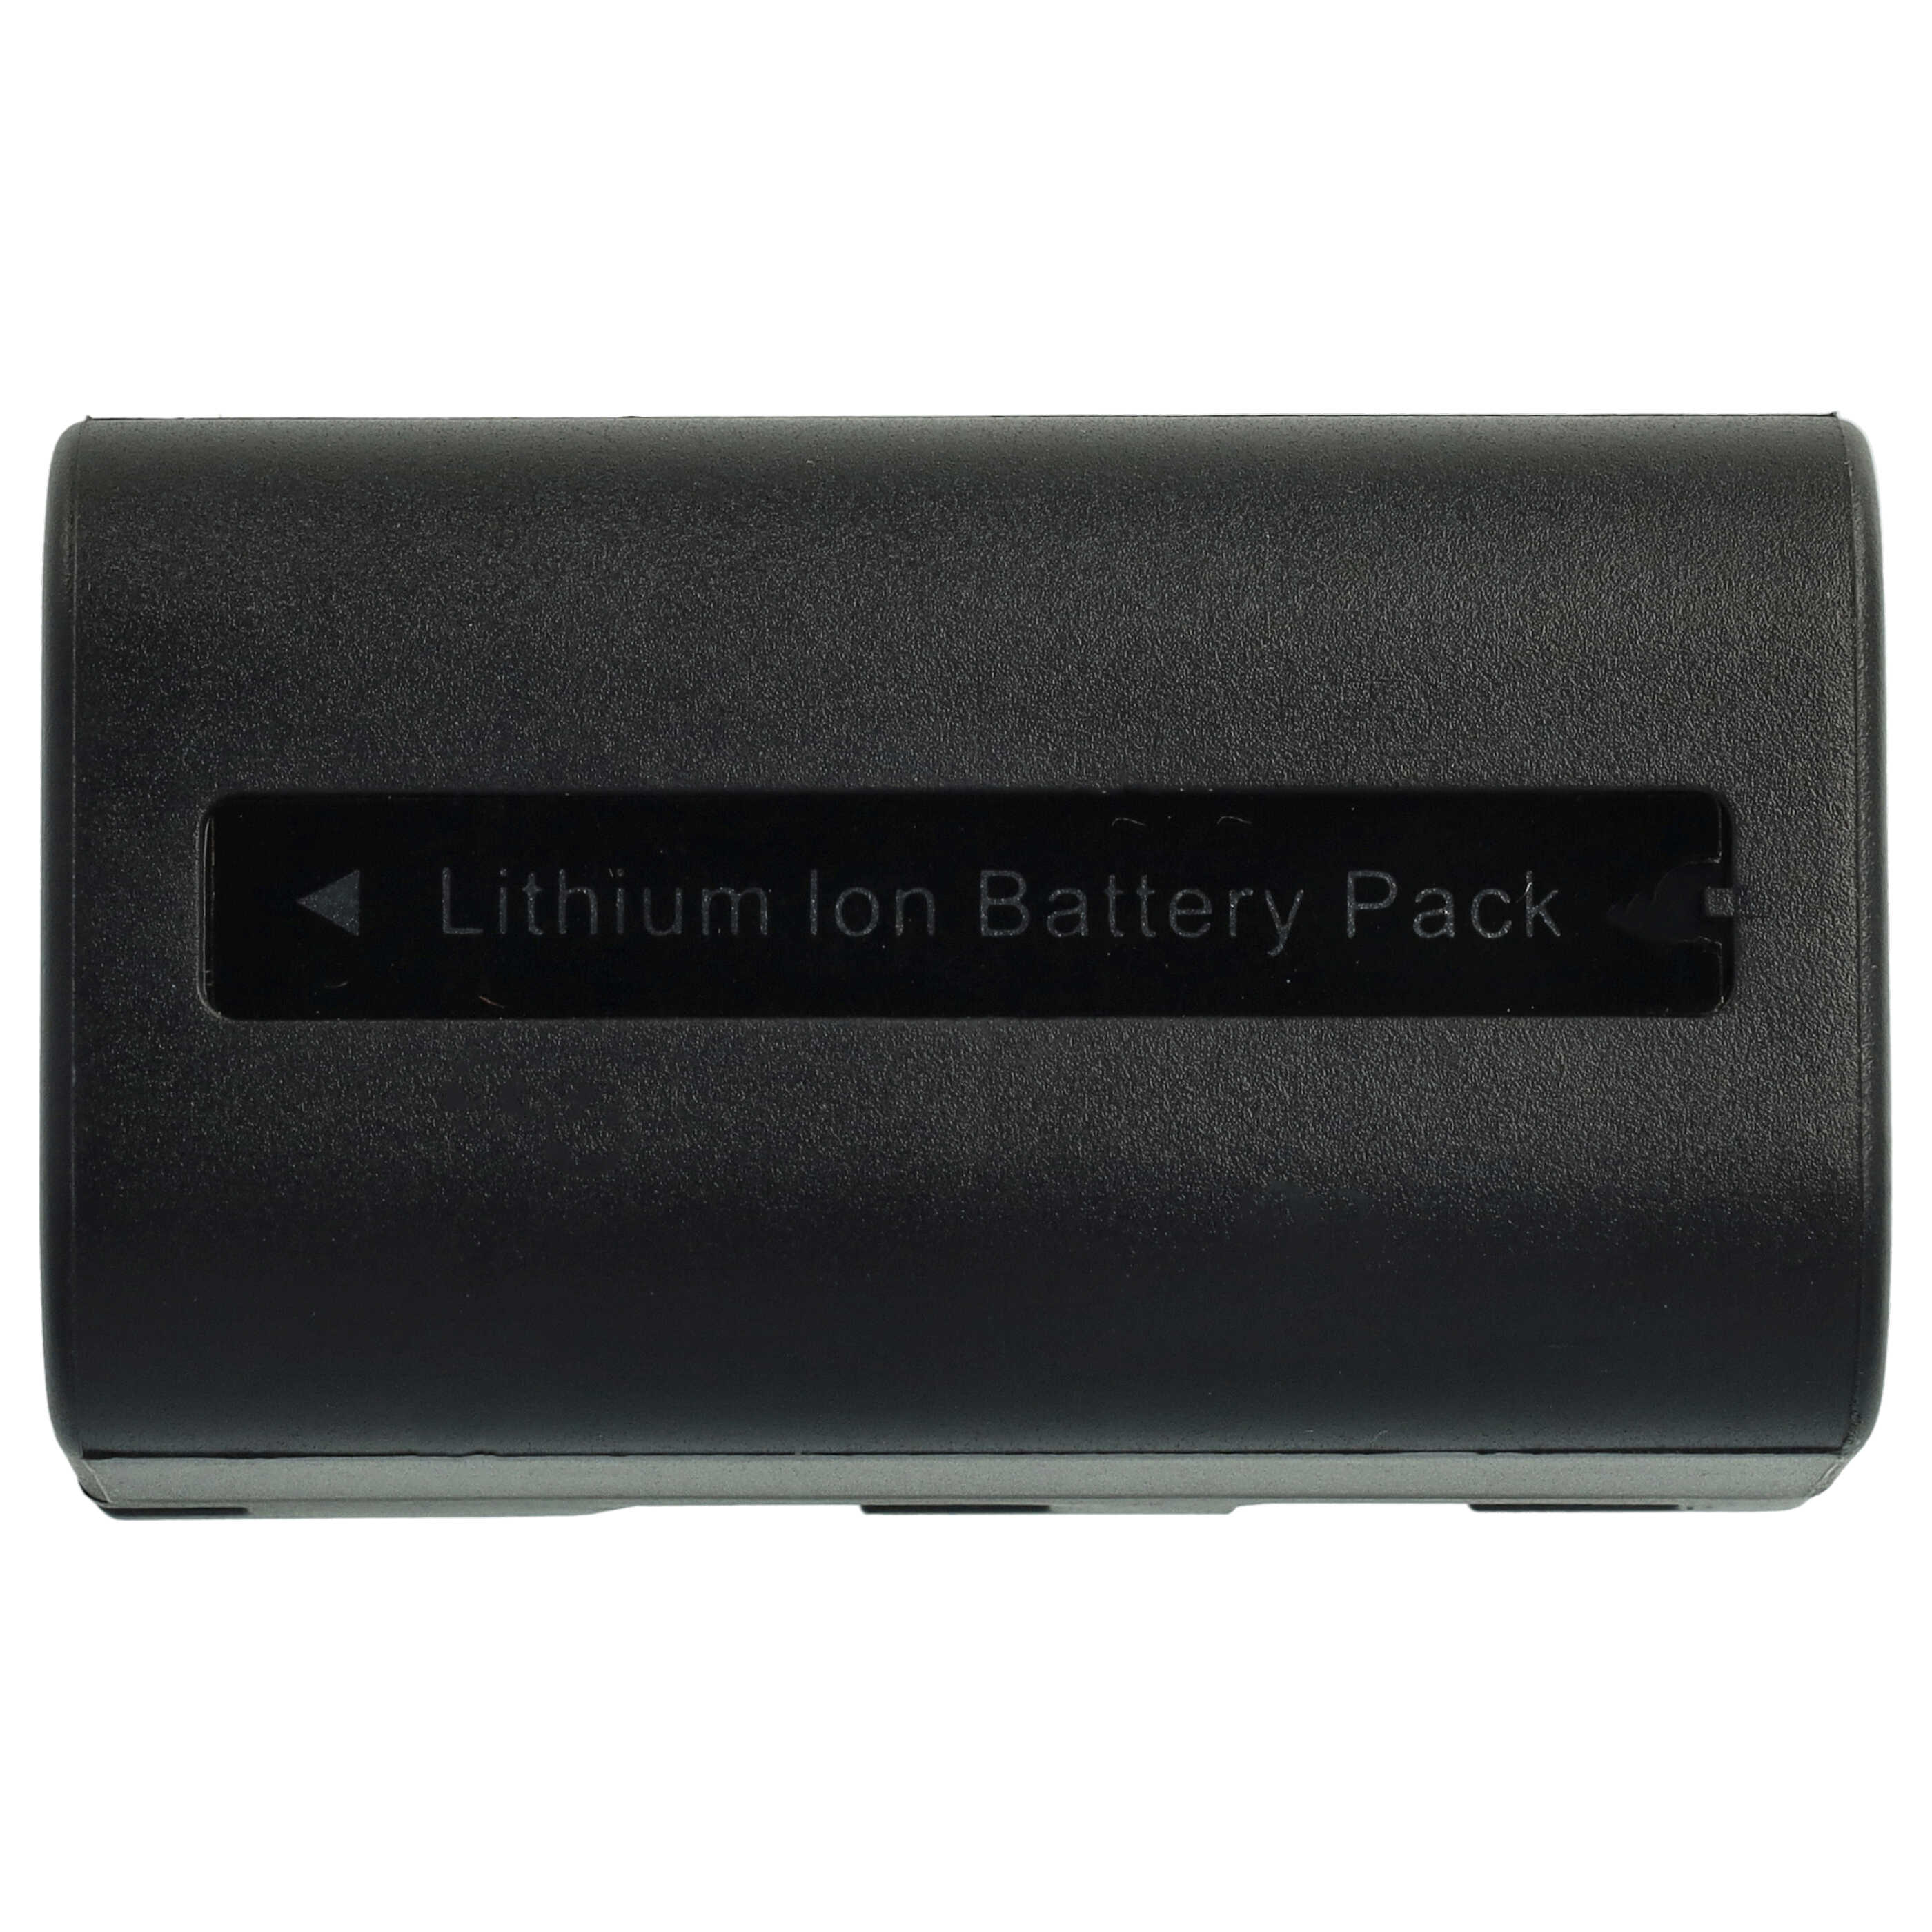 Batterie remplace Samsung SB-LSM80, SB-LSM320, SB-LSM160 pour appareil photo - 1640mAh 7,2V Li-ion